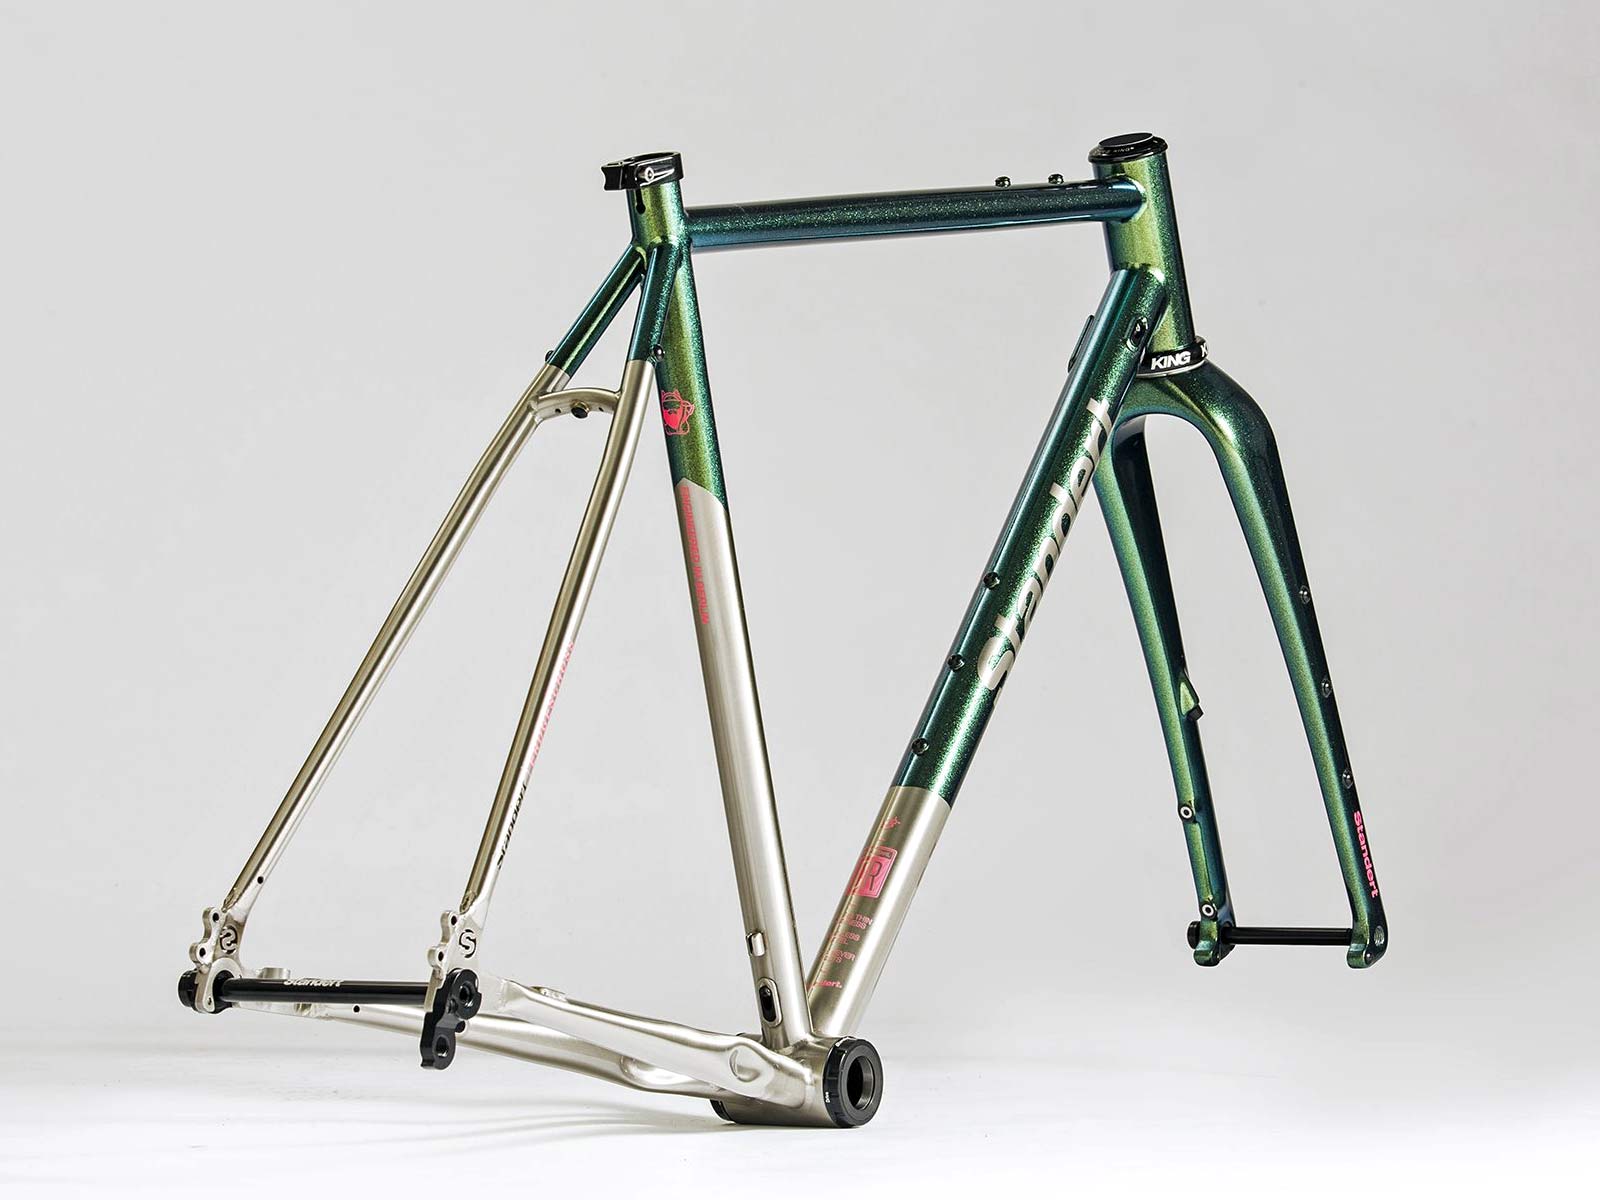 Standert Erdgeschoss steel gravel bike, stainless steel adventure bikepacking gravel road bike, angled frame